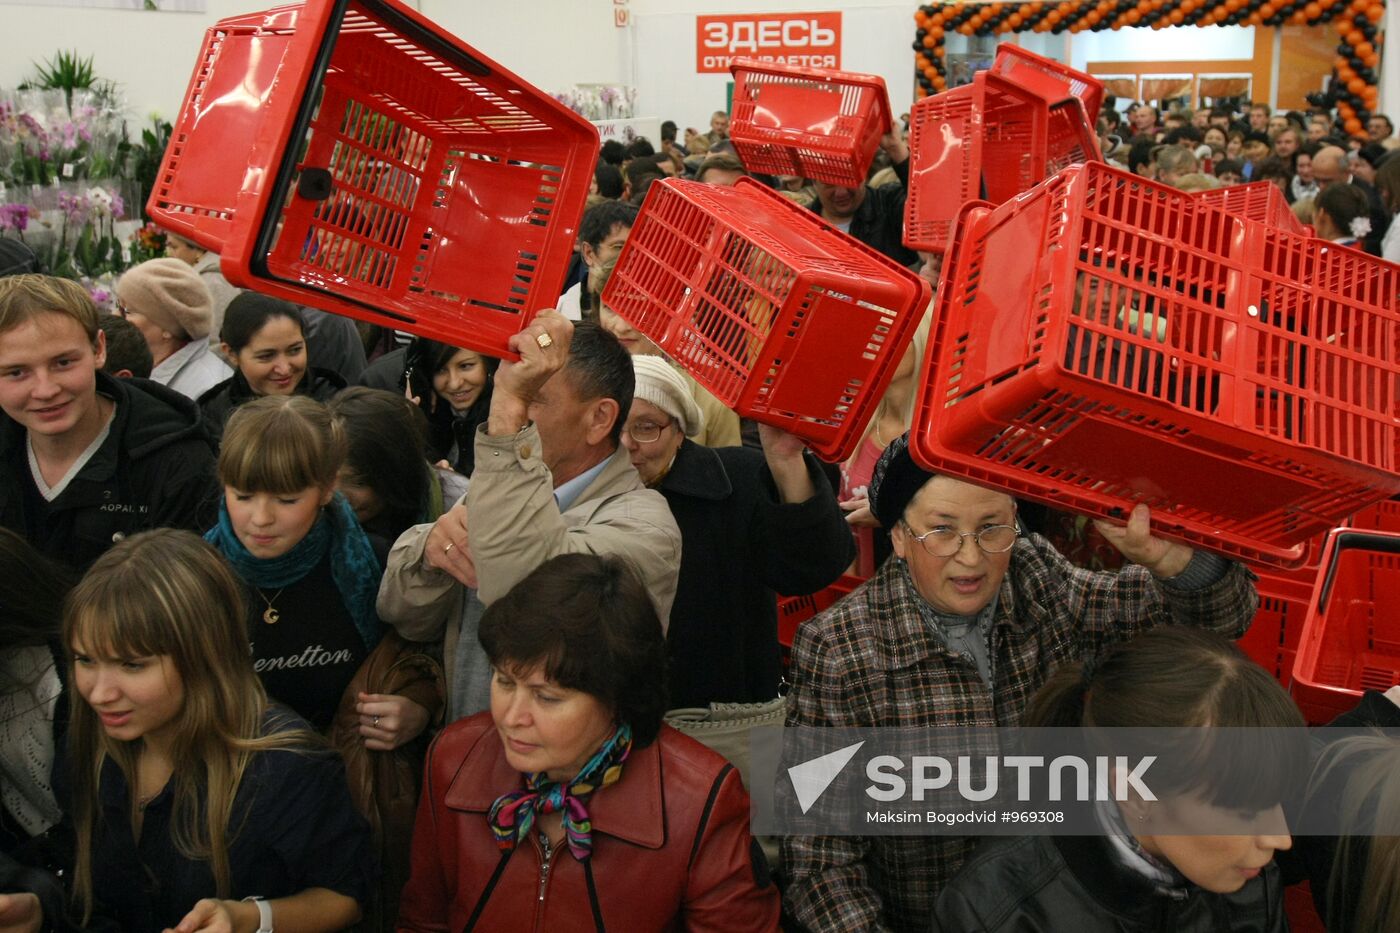 Opening of mega-market "ASHAN Kazan"